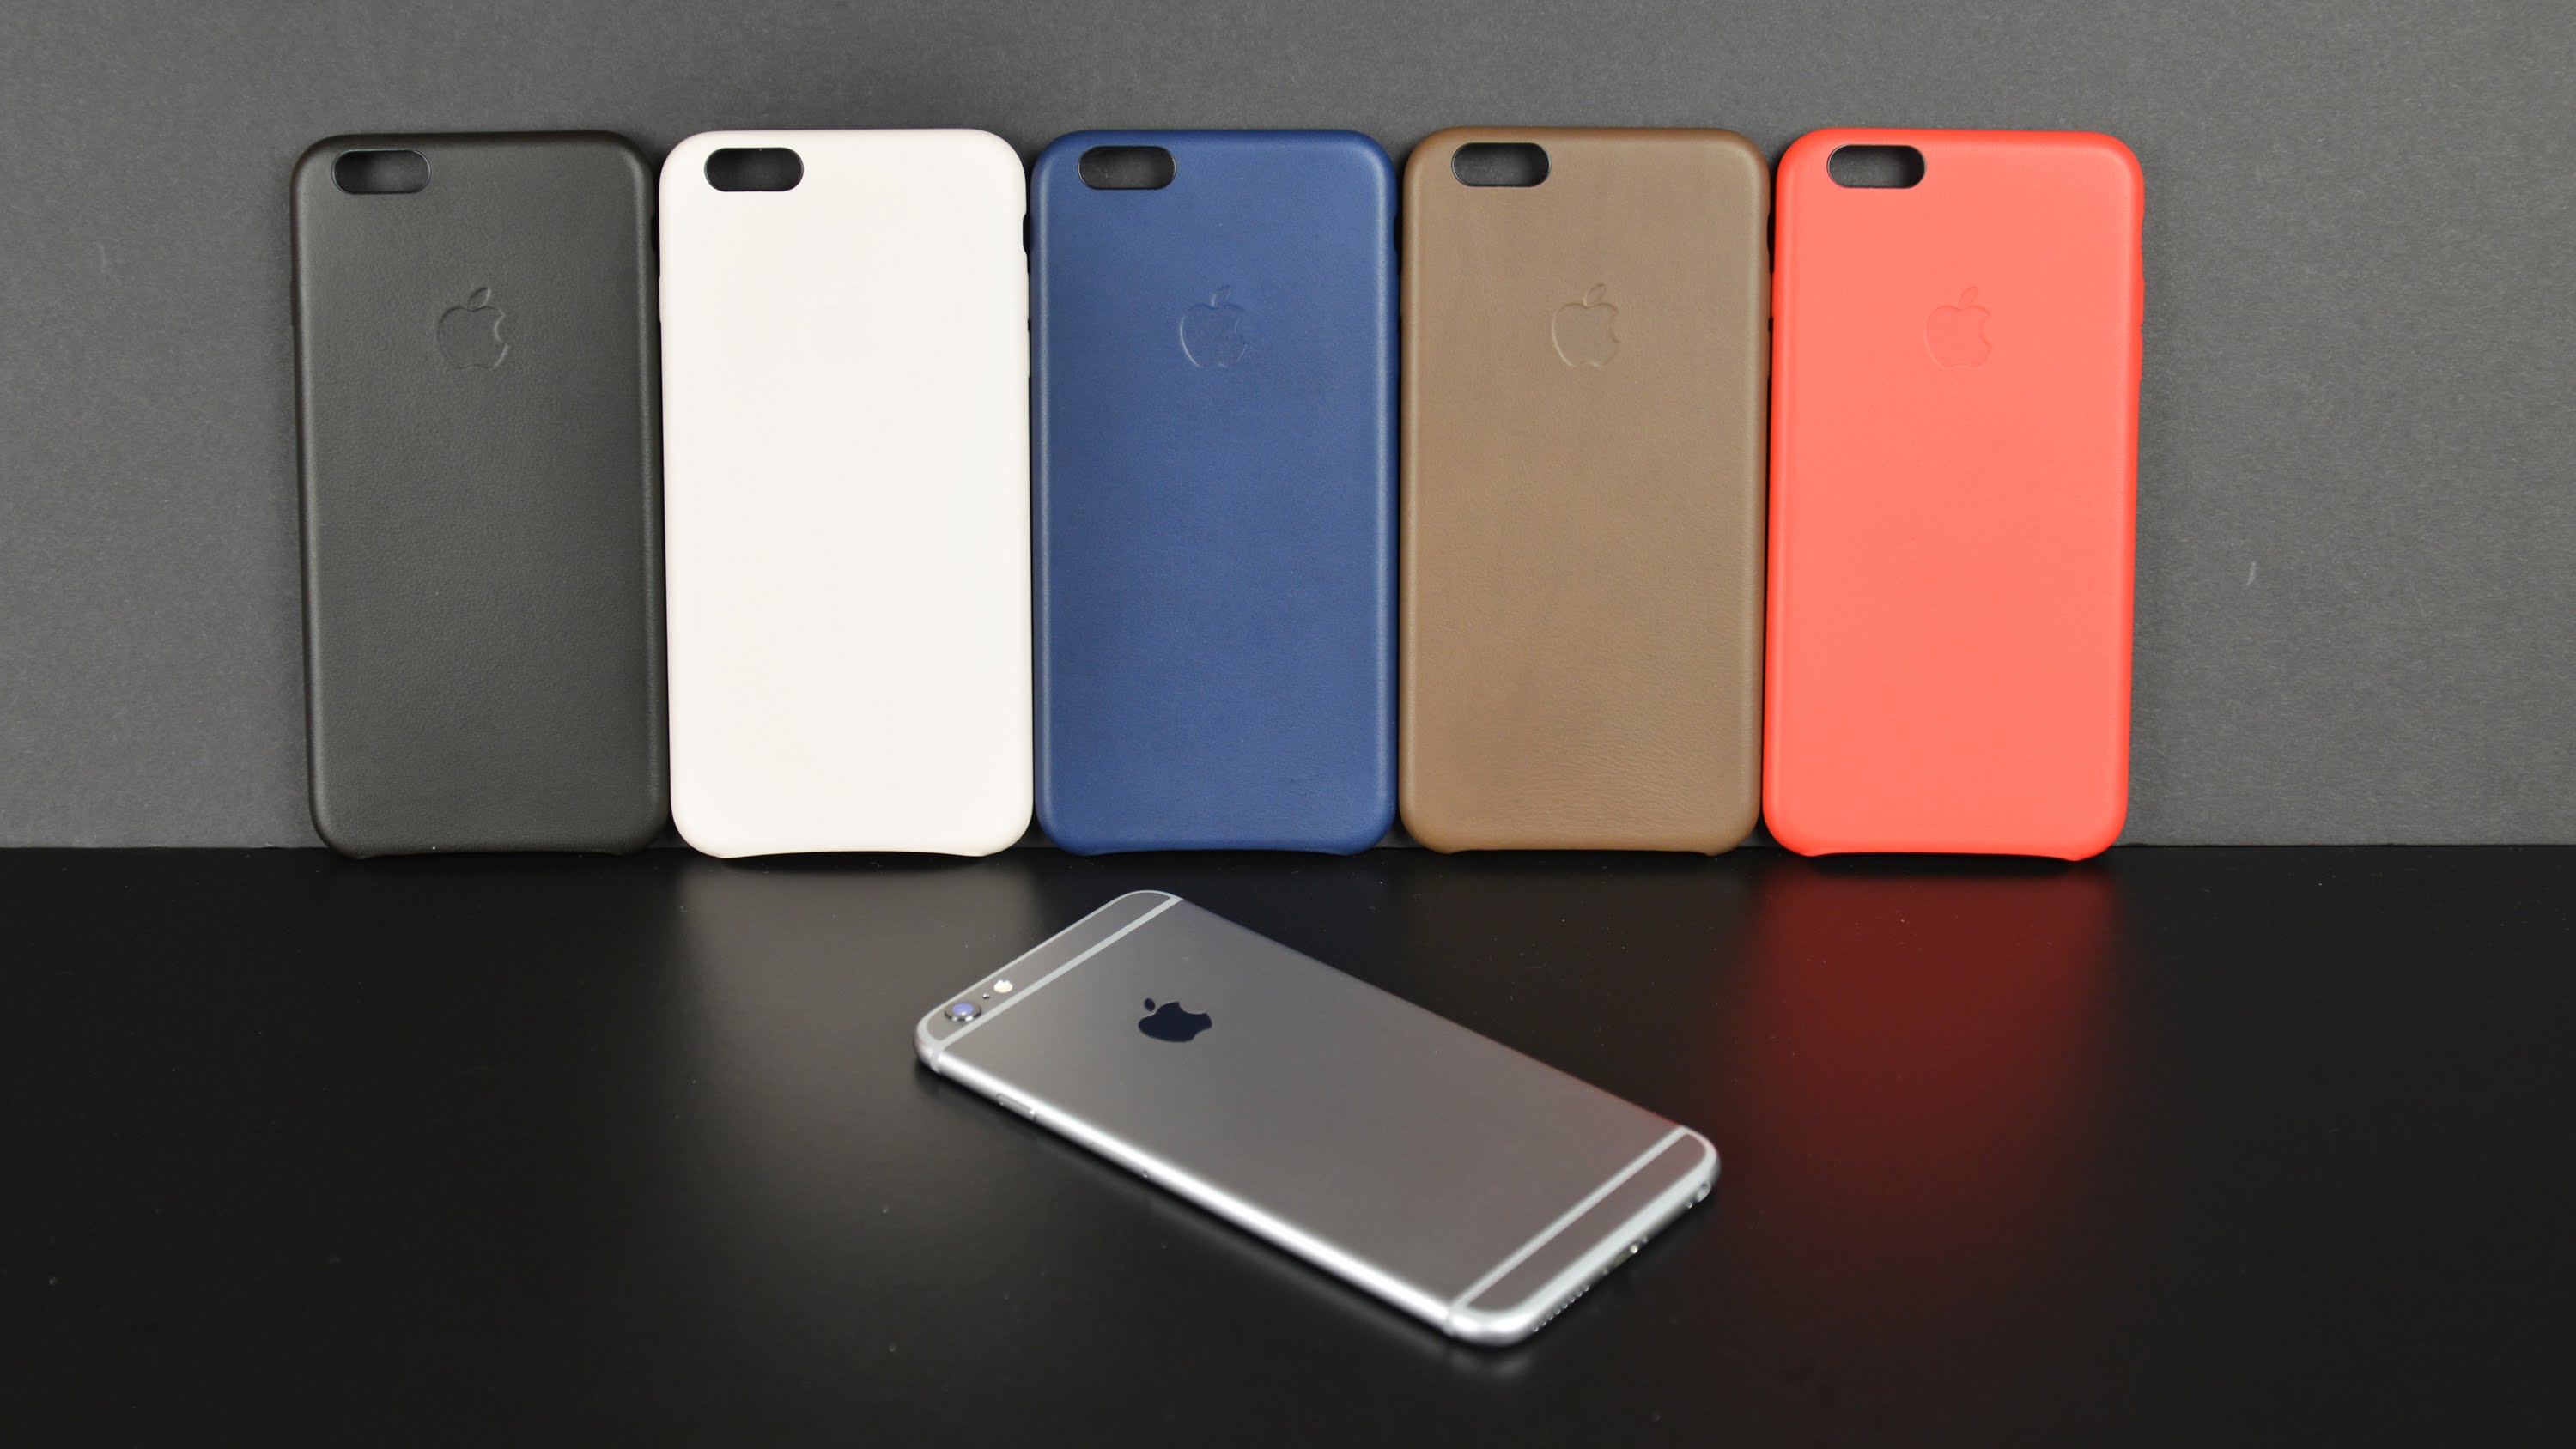 Zadní kryt na Apple iPhone 6s Leather Case Midnight Blue